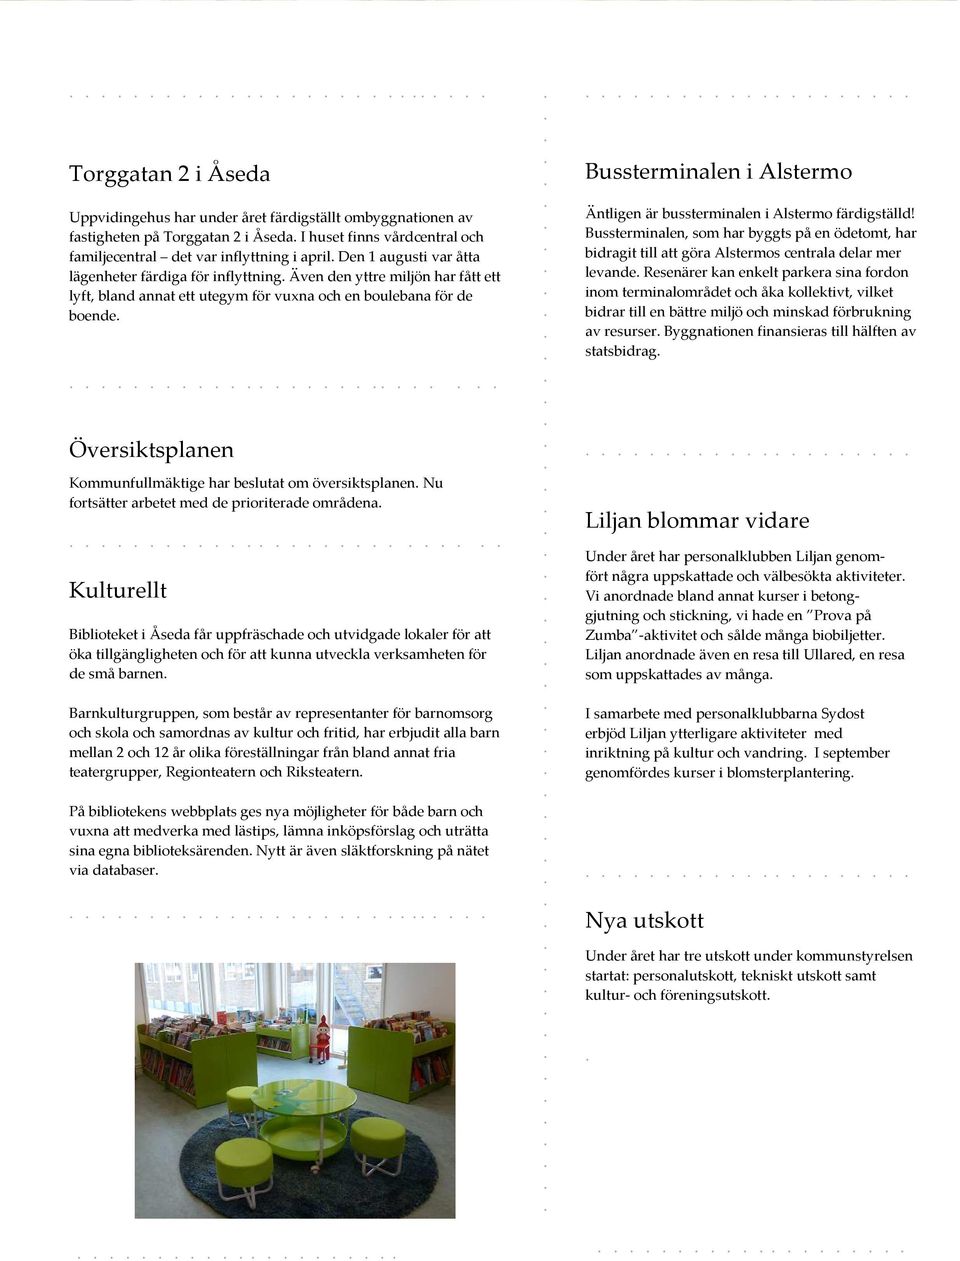 beslutat om översiktsplanen Nu fortsätter arbetet med de prioriterade områdena Kulturellt Biblioteket i Åseda får uppfräschade och utvidgade lokaler för att öka tillgängligheten och för att kunna